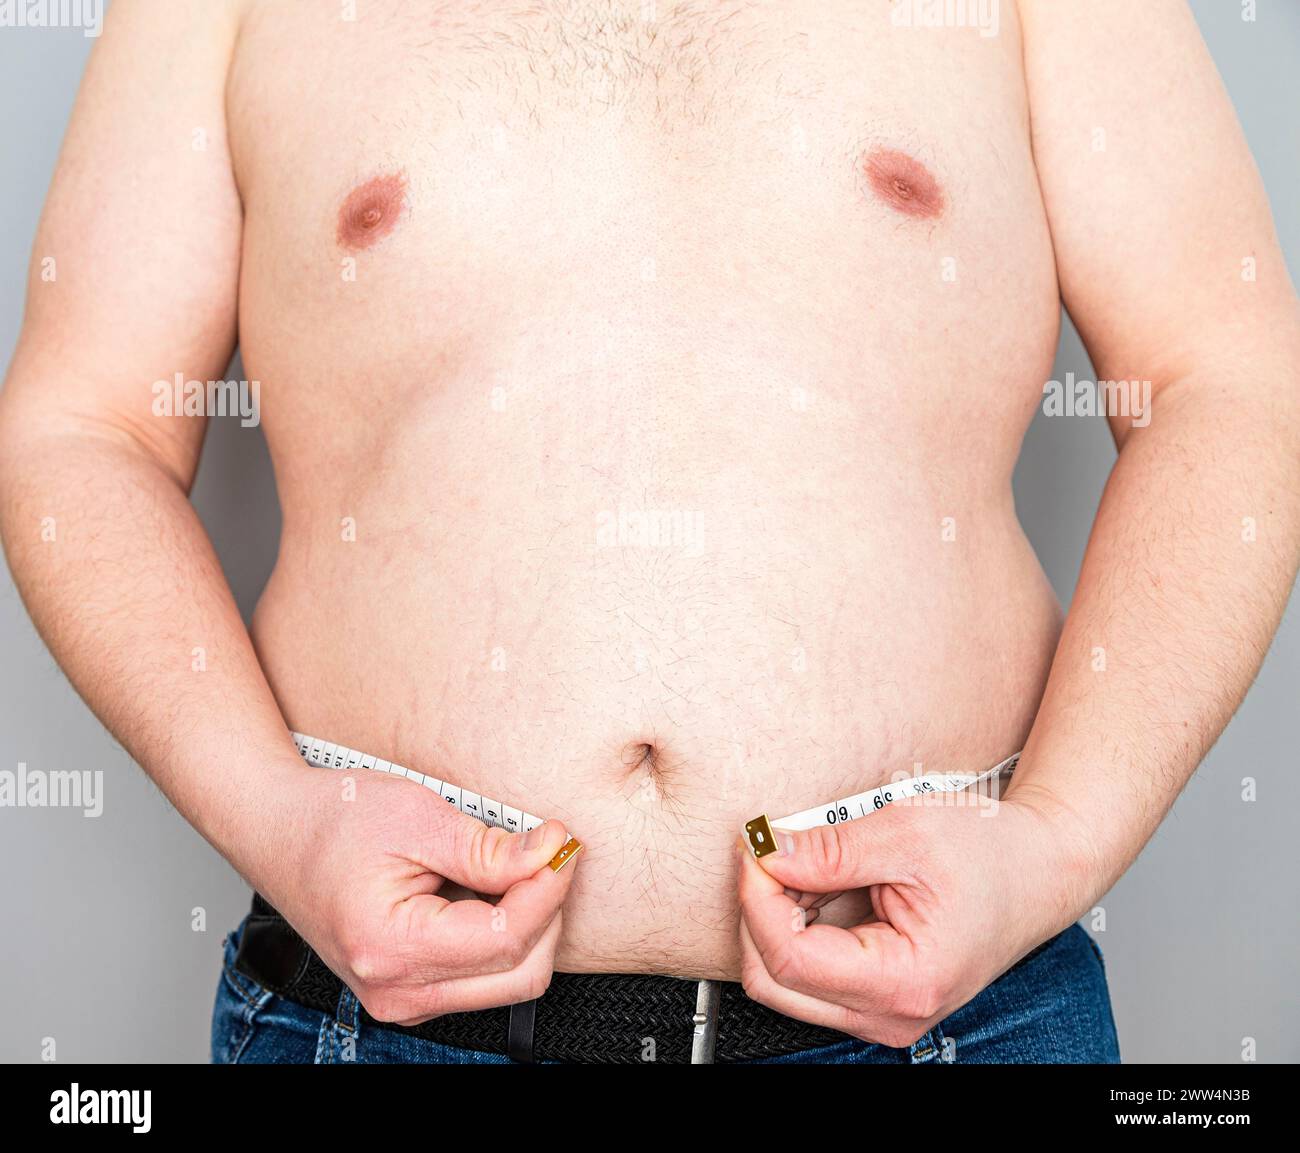 Nahaufnahme des übergewichtigen Bauches eines nicht erkennbaren kaukasischen Mannes mit einem Maßband, das nicht ausreicht, um seinen Bauch einzukreisen. Stockfoto